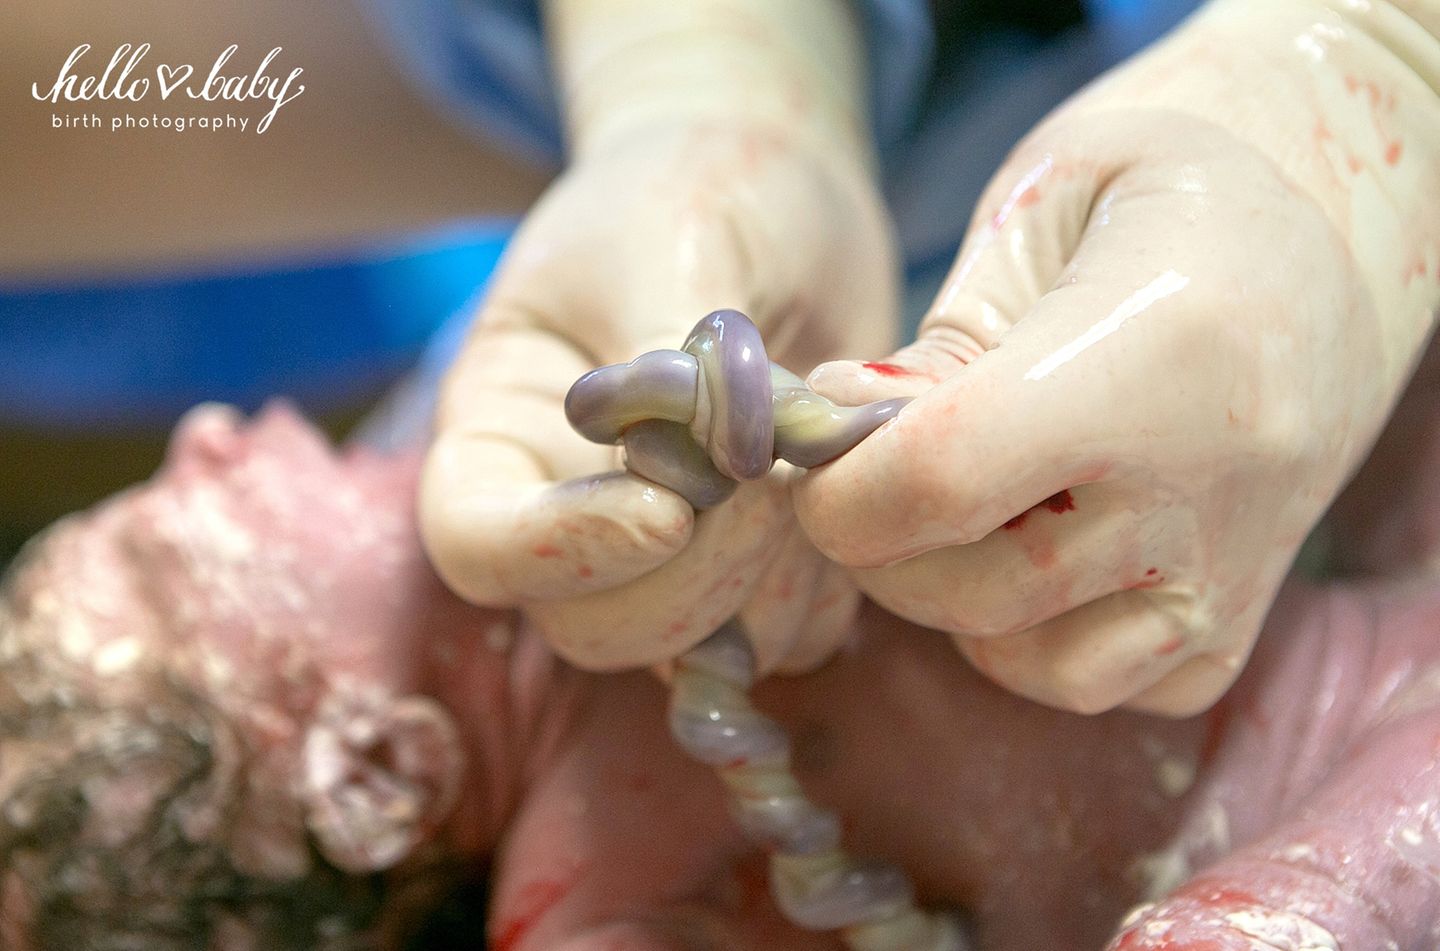 Emotionen pur!: "Ein echter Knoten in der Nabelschnur kommt im Mutterleib sehr selten vor. Normalerweise macht sie keine Probleme, aber sie kann sich zuziehen, wenn das Baby durch den Geburtskanal gepresst wird. Das kann die Blutzirkulation zwischen Plazenta und Kind unterbrechen."